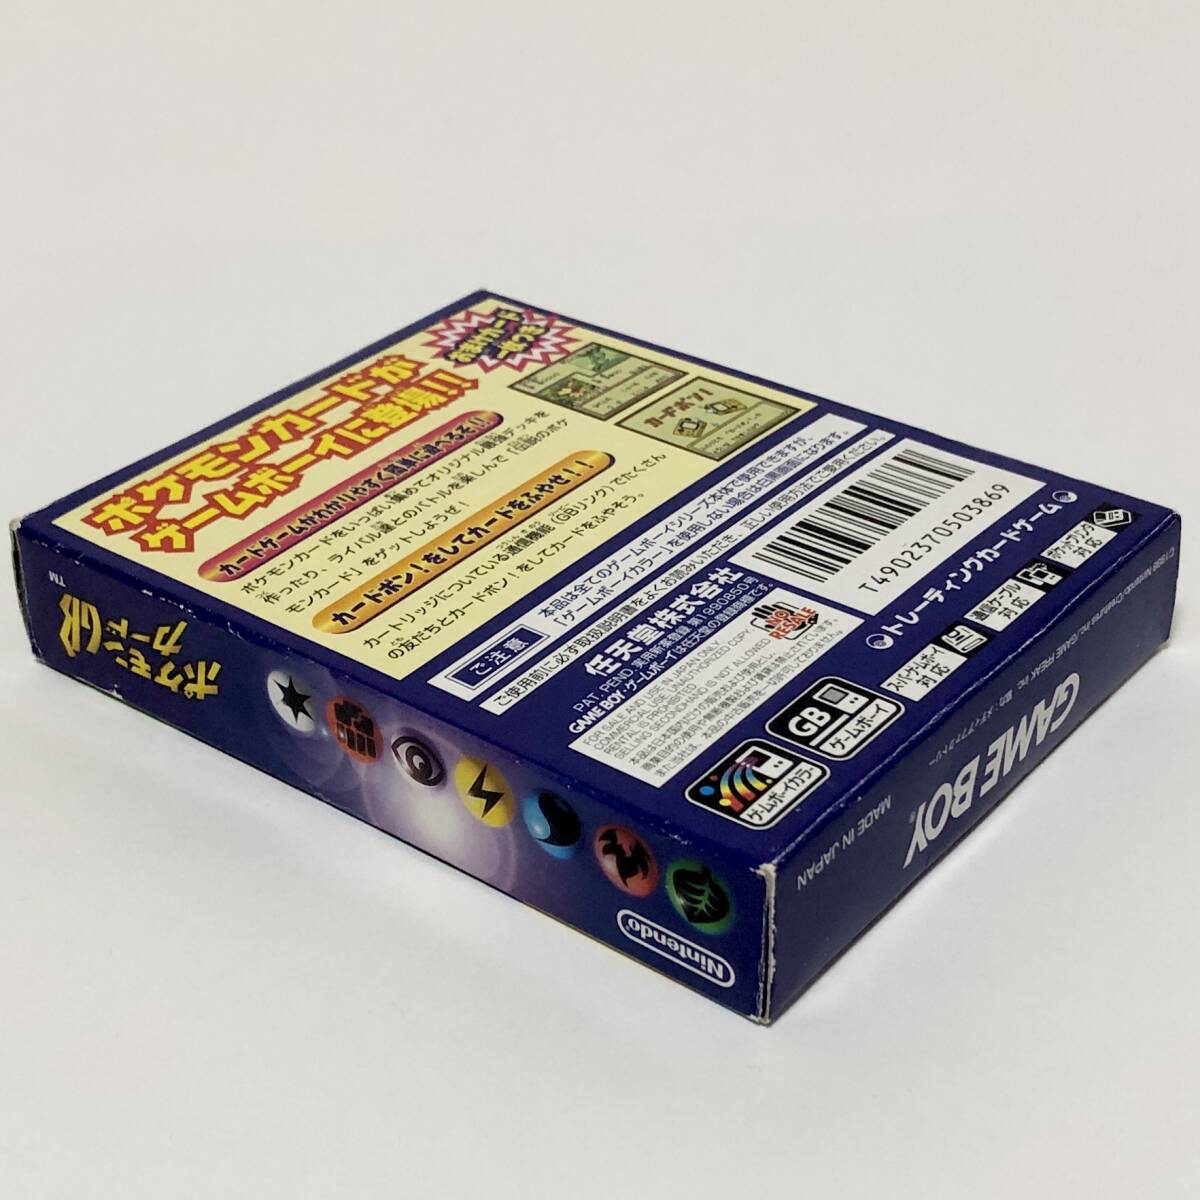 ゲームボーイ 中古品 ポケモンカードGB 箱説付き カード付属 痛みあり ポケモン 任天堂 Nintendo GameBoy Pokemon Card GB CIB Testedの画像6